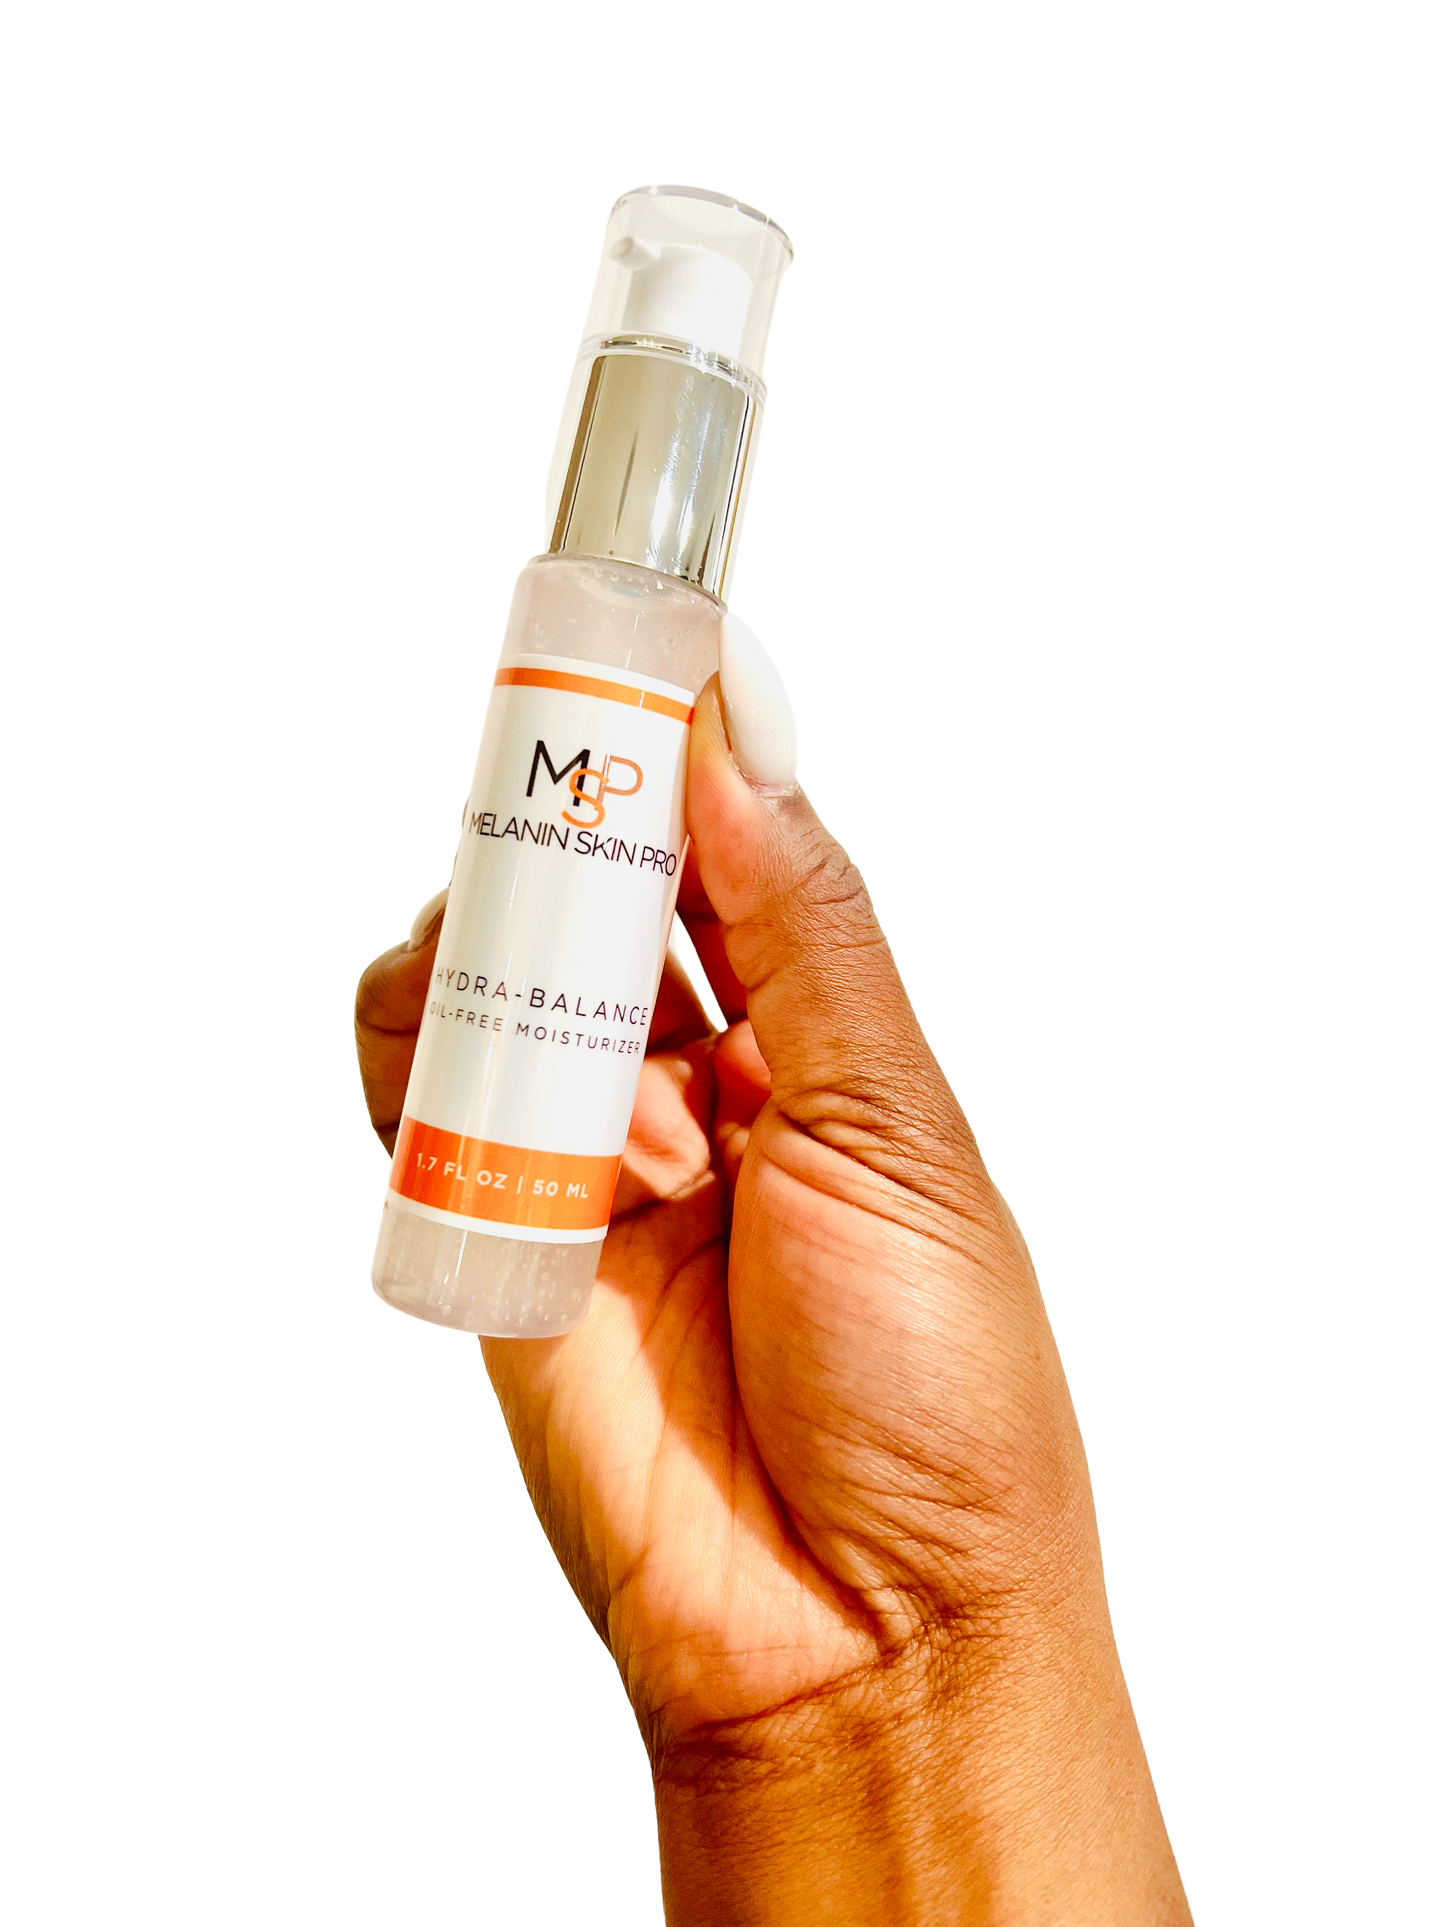 Melanin Skin Pro Hydra-balance Moisturizer